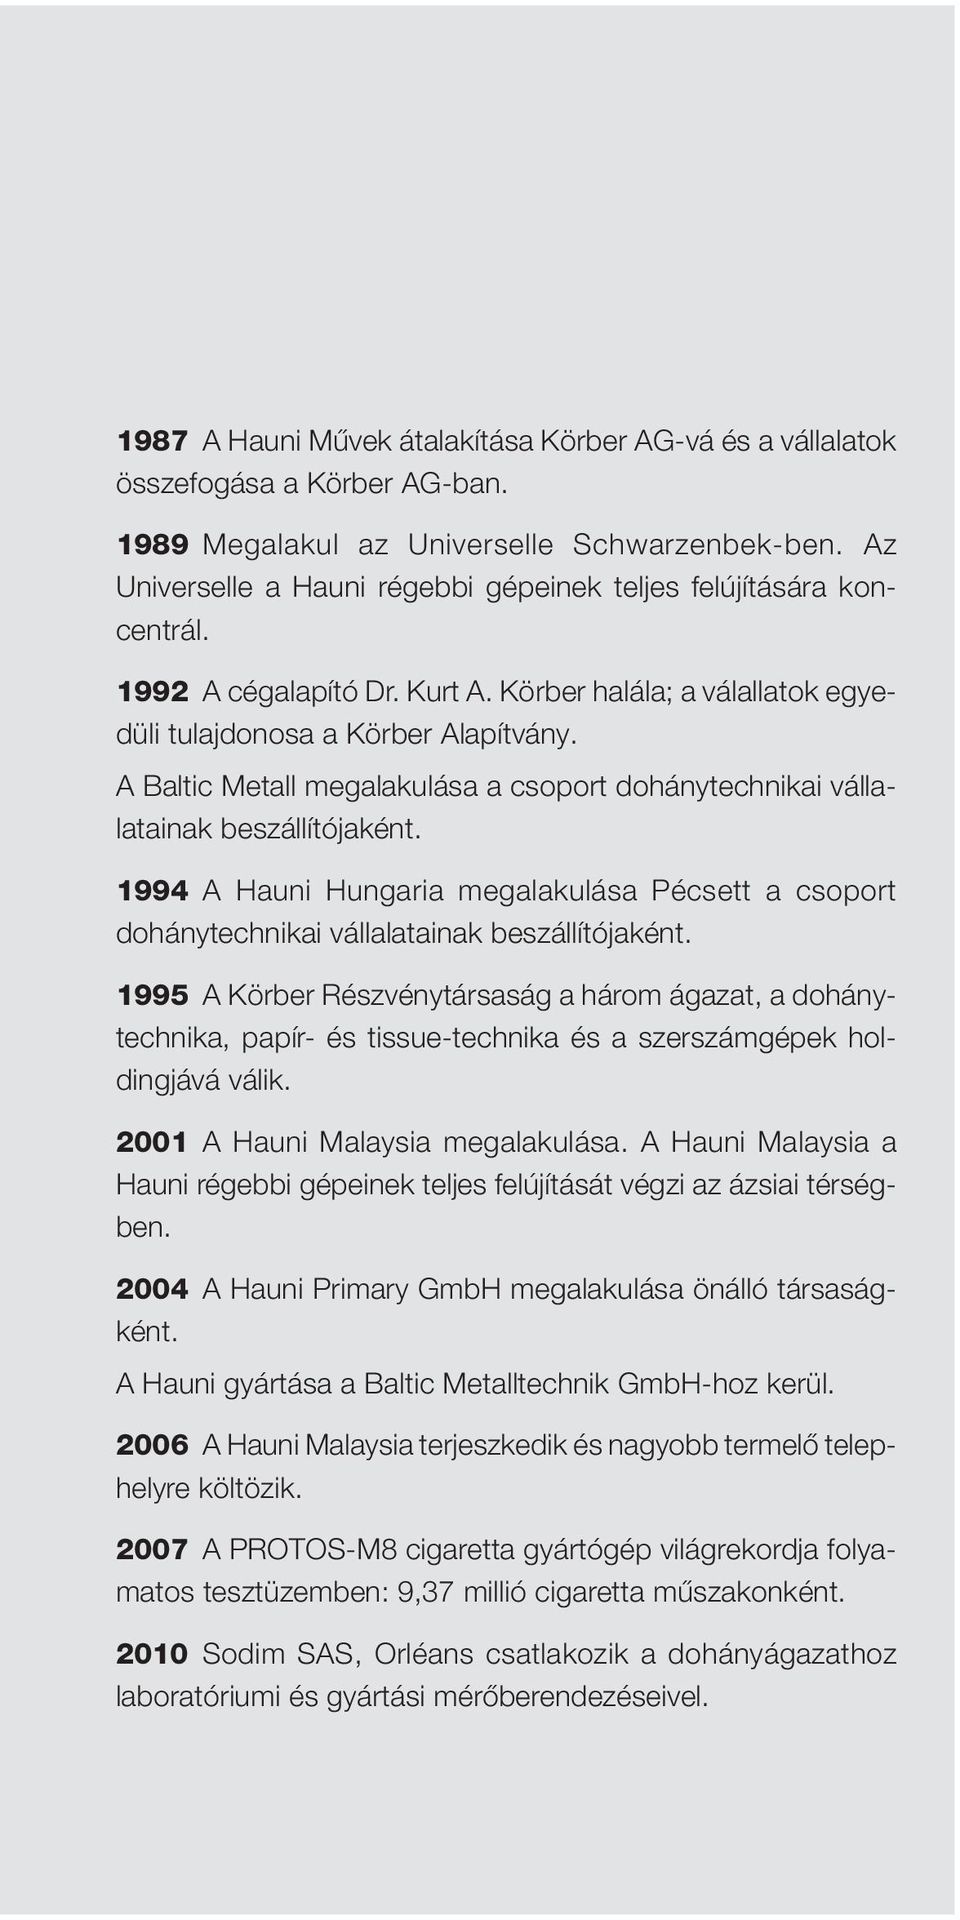 A Baltic Metall megalakulása a csoport dohánytechnikai vállalatainak beszállítójaként. 1994 A Hauni Hungaria megalakulása Pécsett a csoport dohánytechnikai vállalatainak beszállítójaként.